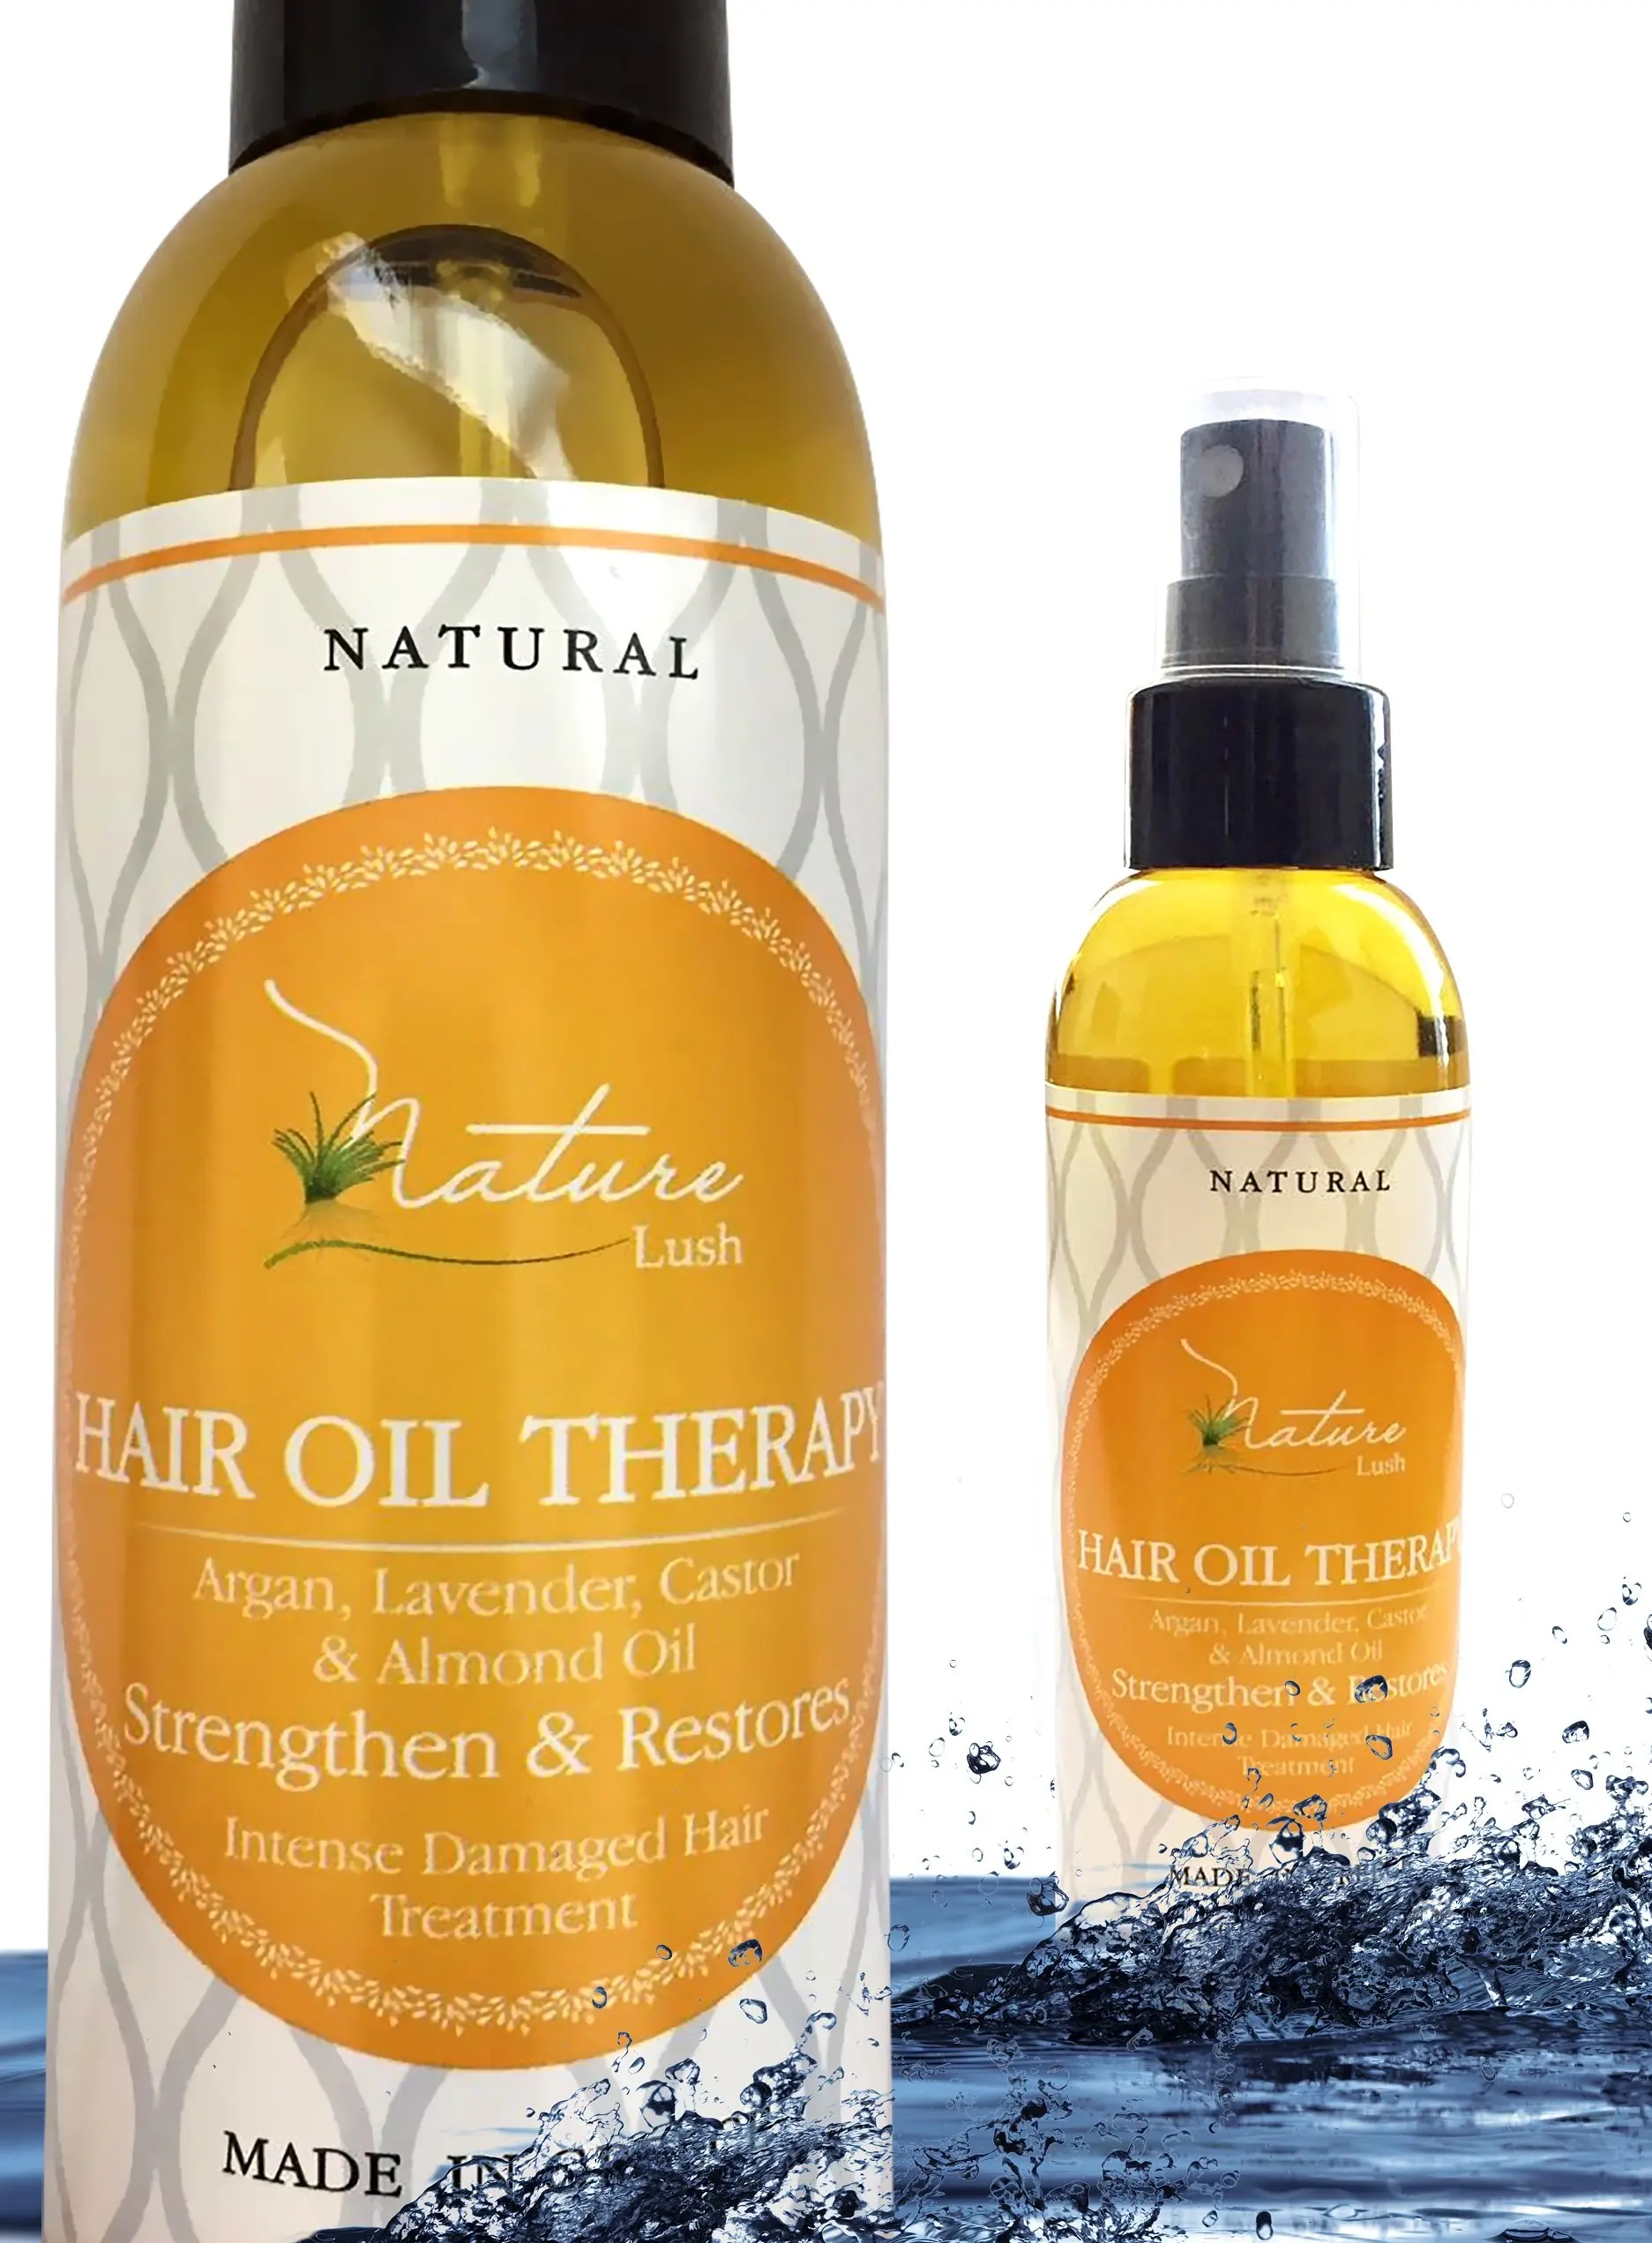 Therapy масло для волос. Argan Castor hair. Hair Therapy Oil. Lush масло для волос отзывы.